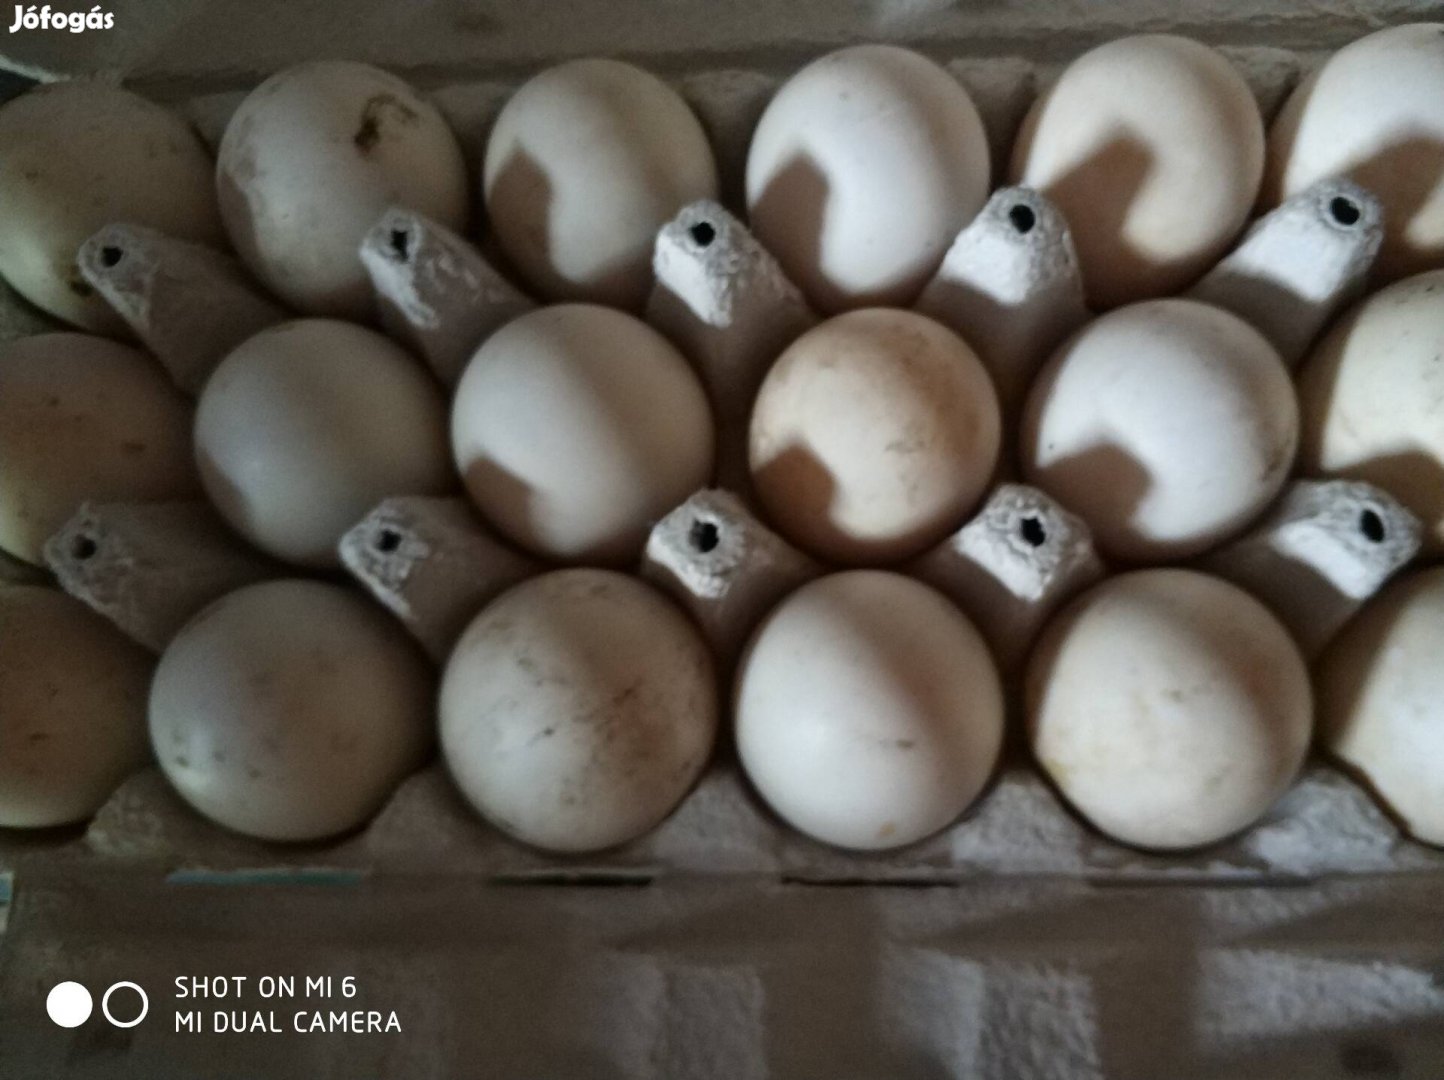 Keltetni való kacsa tojás